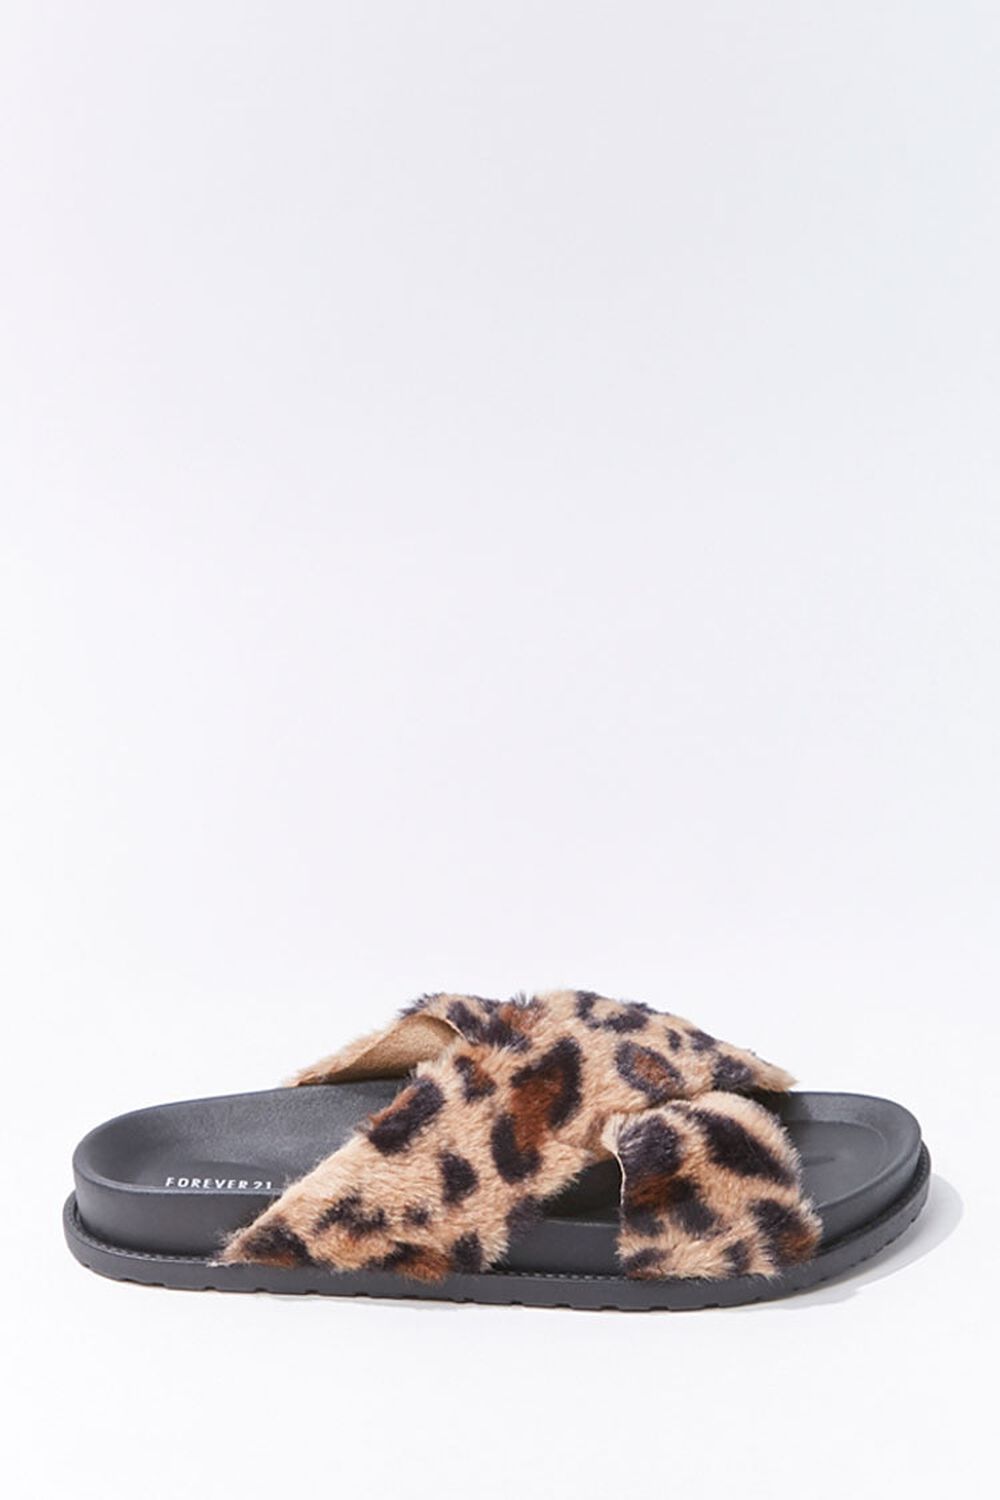 TAN/MULTI Plush Leopard Print Crisscross Slippers, image 1